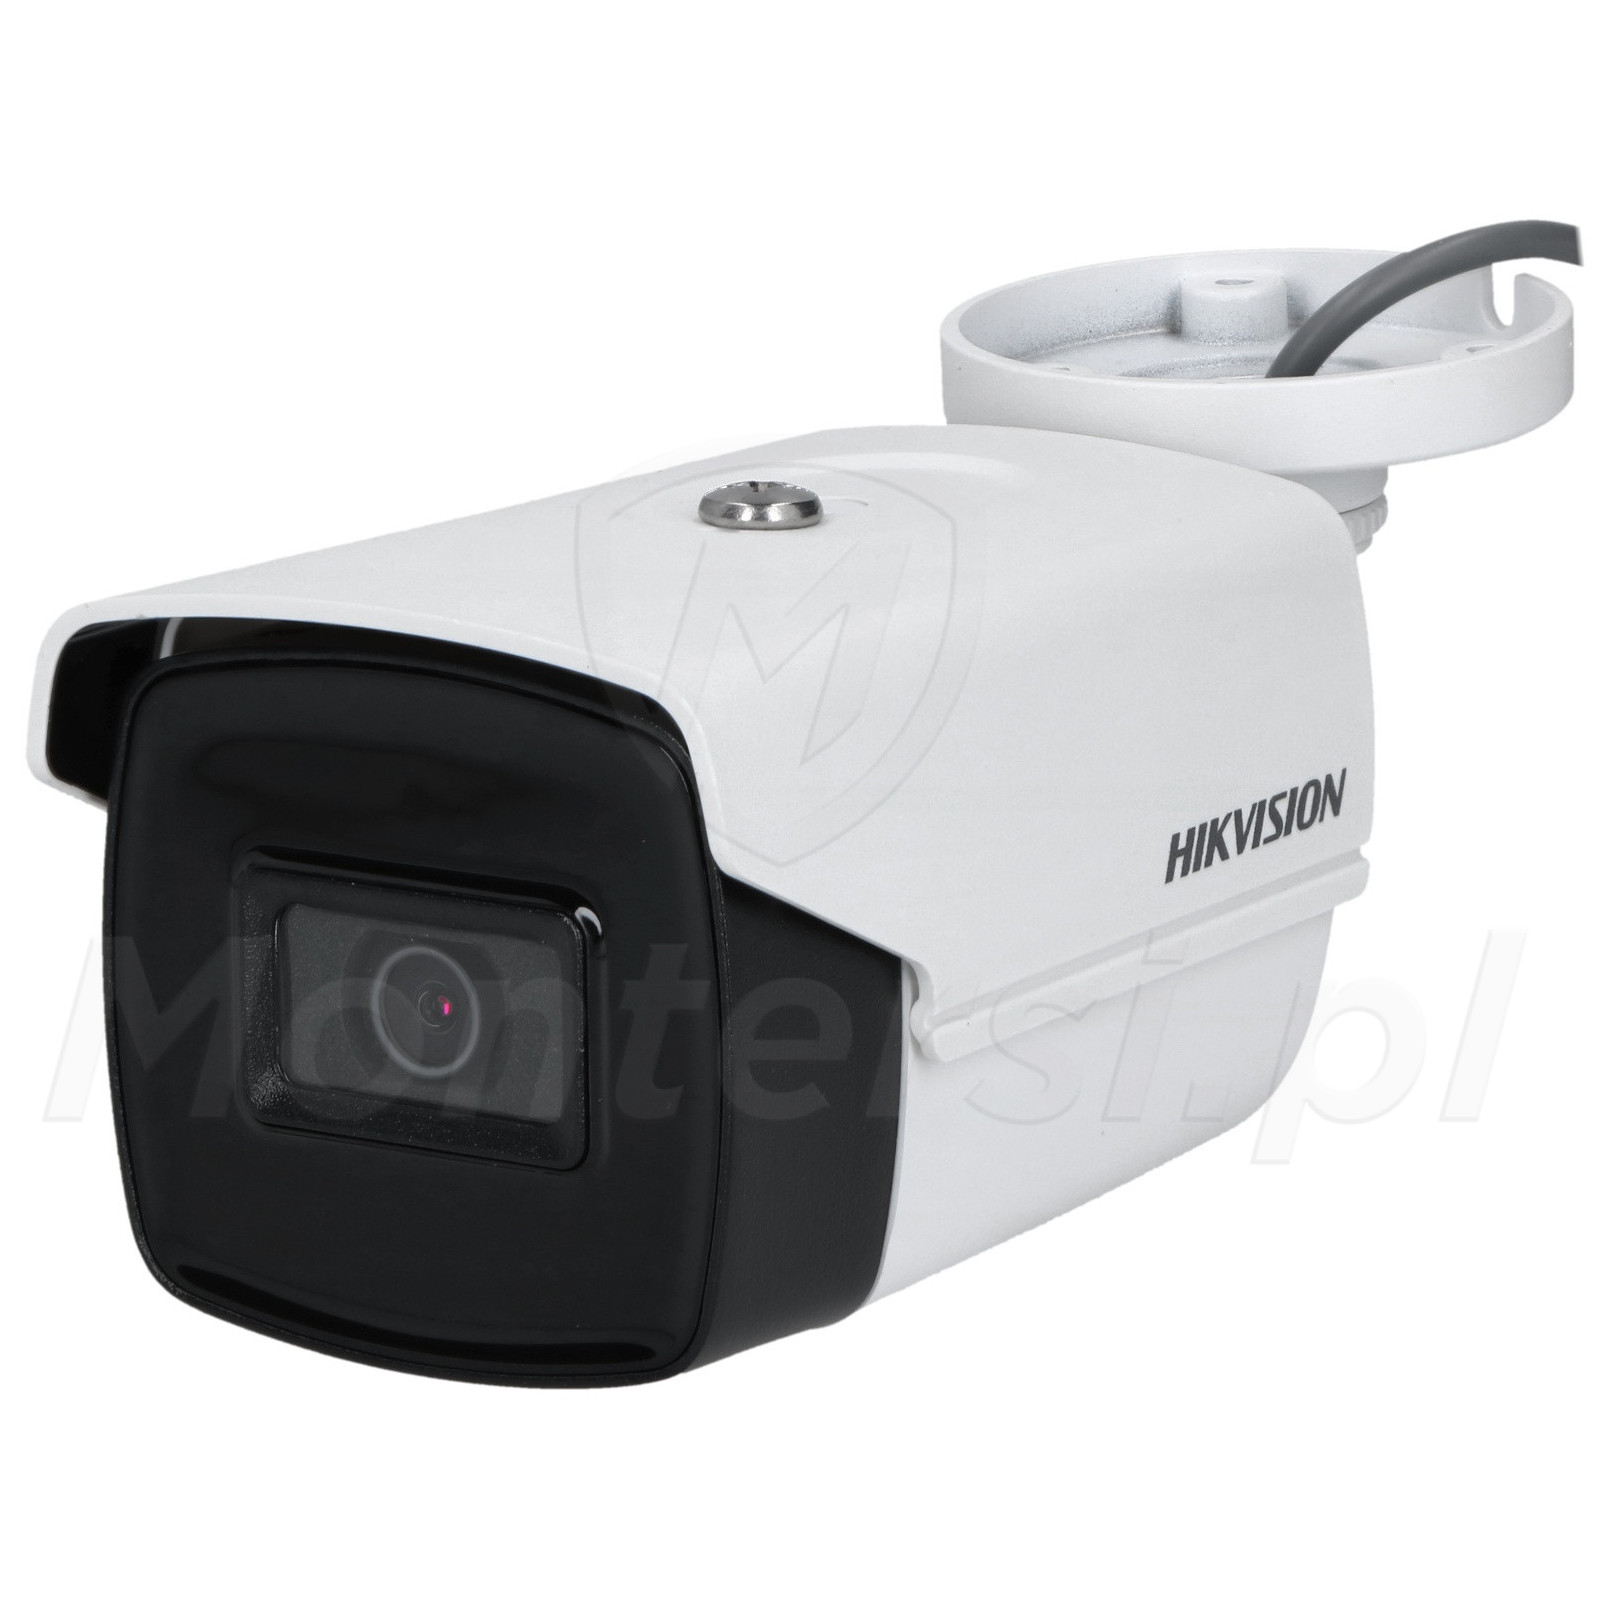 Tubowa kamera IP DS-2CE16H8T-IT3F